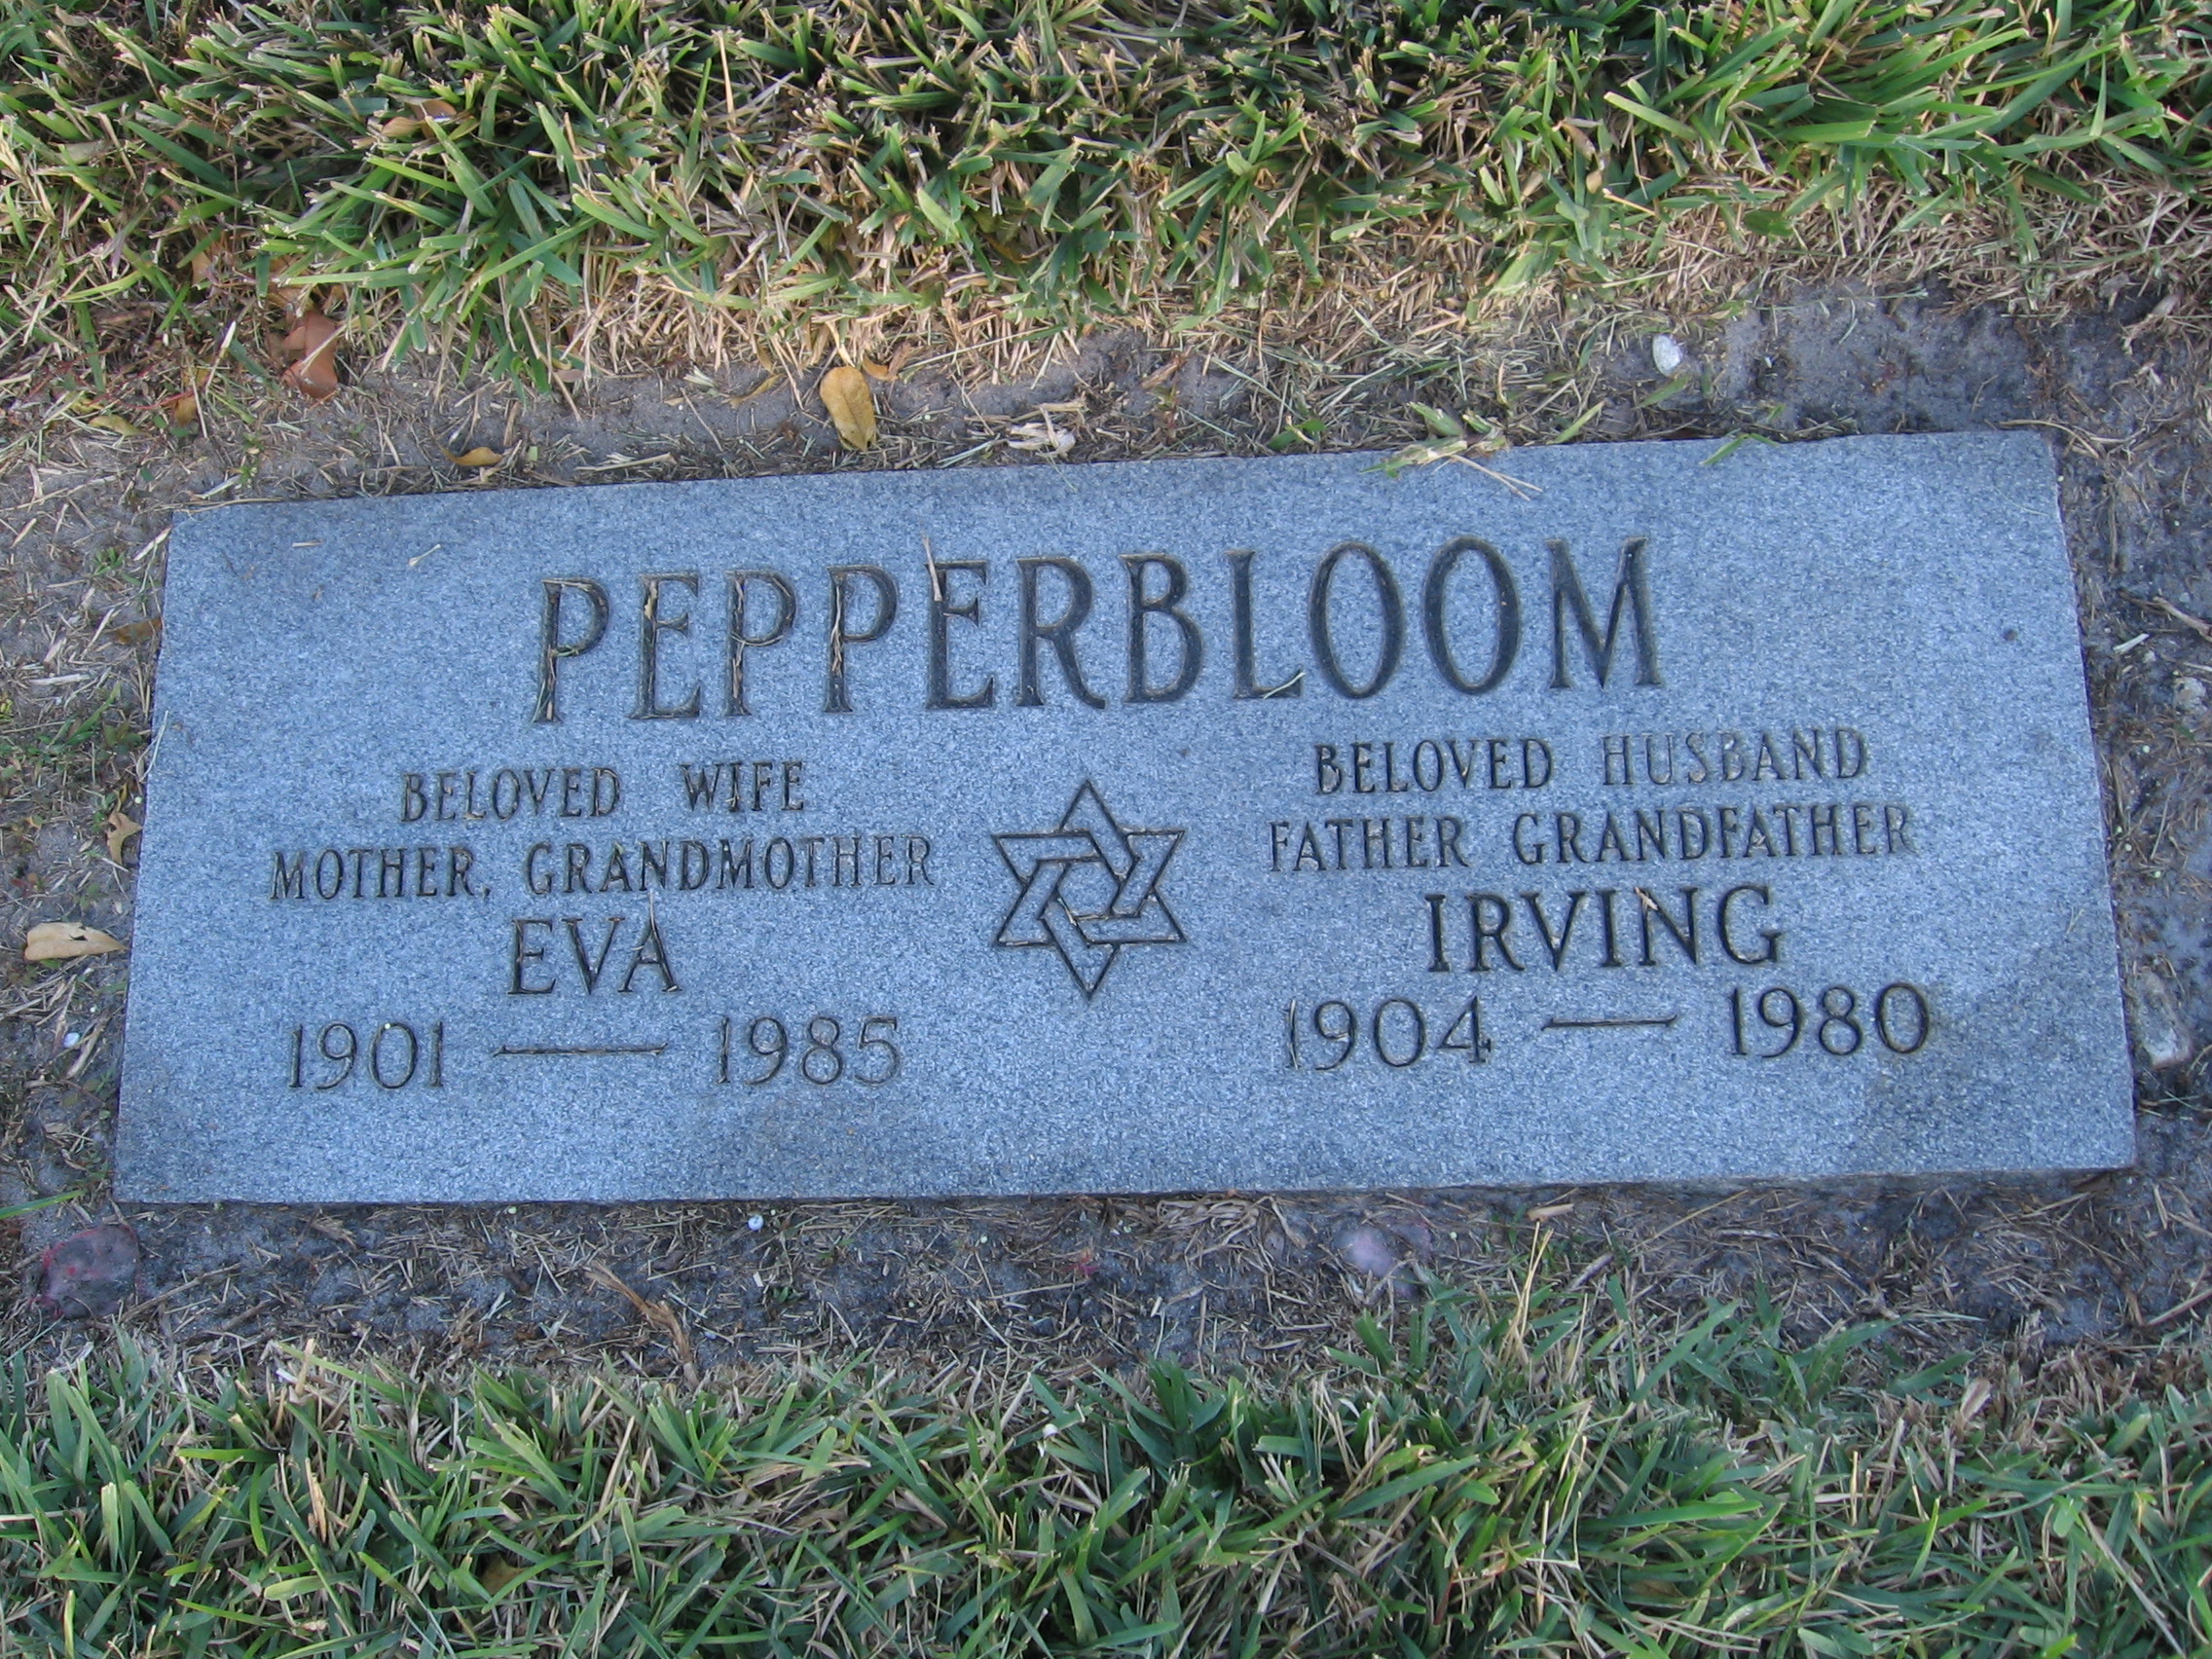 Eva Pepperbloom